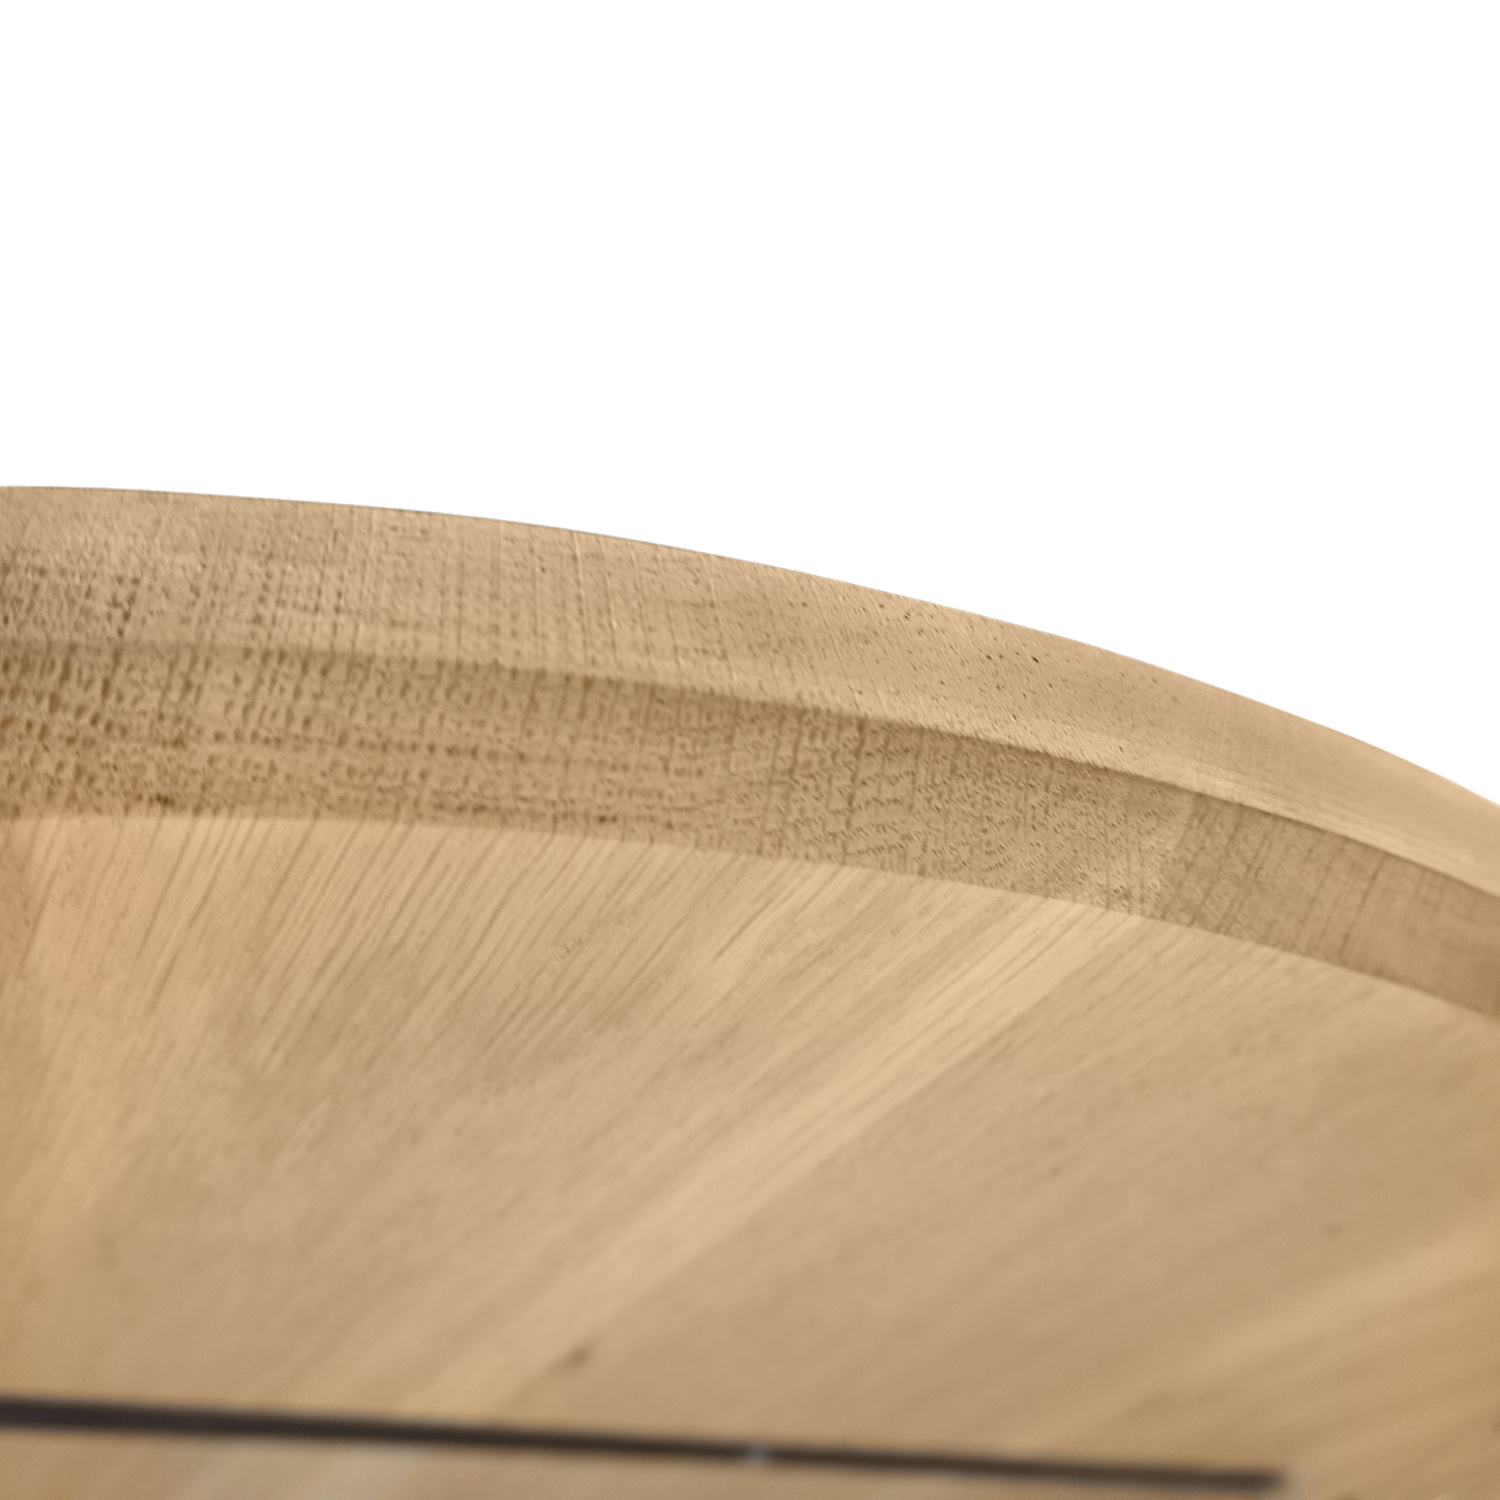  Eiken tafelblad rond - 3 cm dik (1-laag) - Diverse afmetingen - optioneel geborsteld - extra rustiek Europees eikenhout - met extra brede lamellen (circa 14-20 cm) - verlijmd kd 10-12%